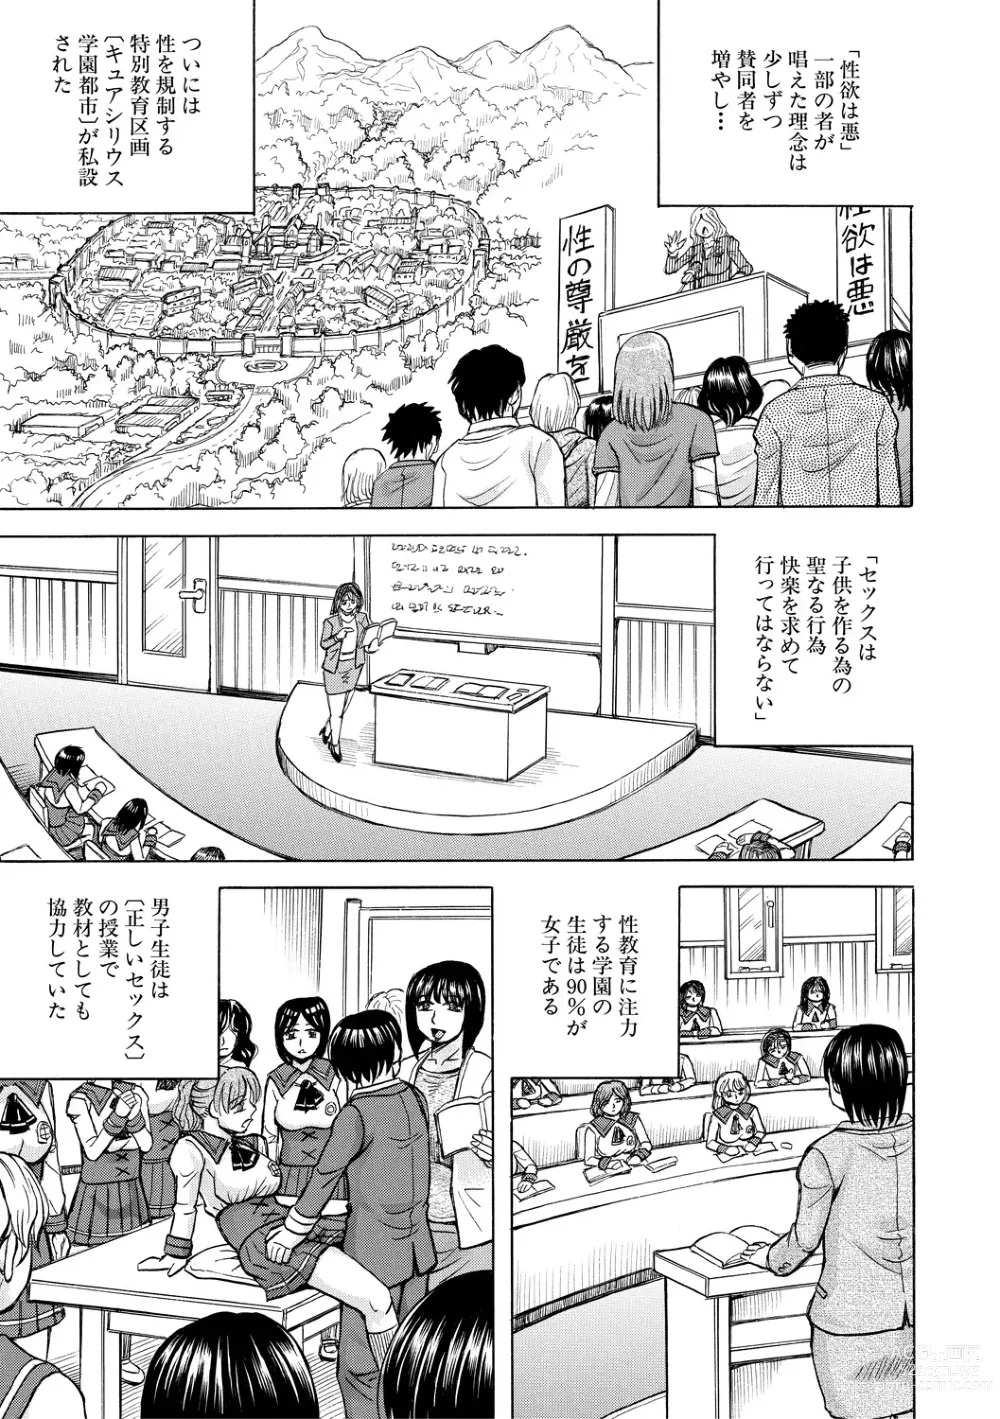 Page 3 of manga Mesu Ochi Gakuen